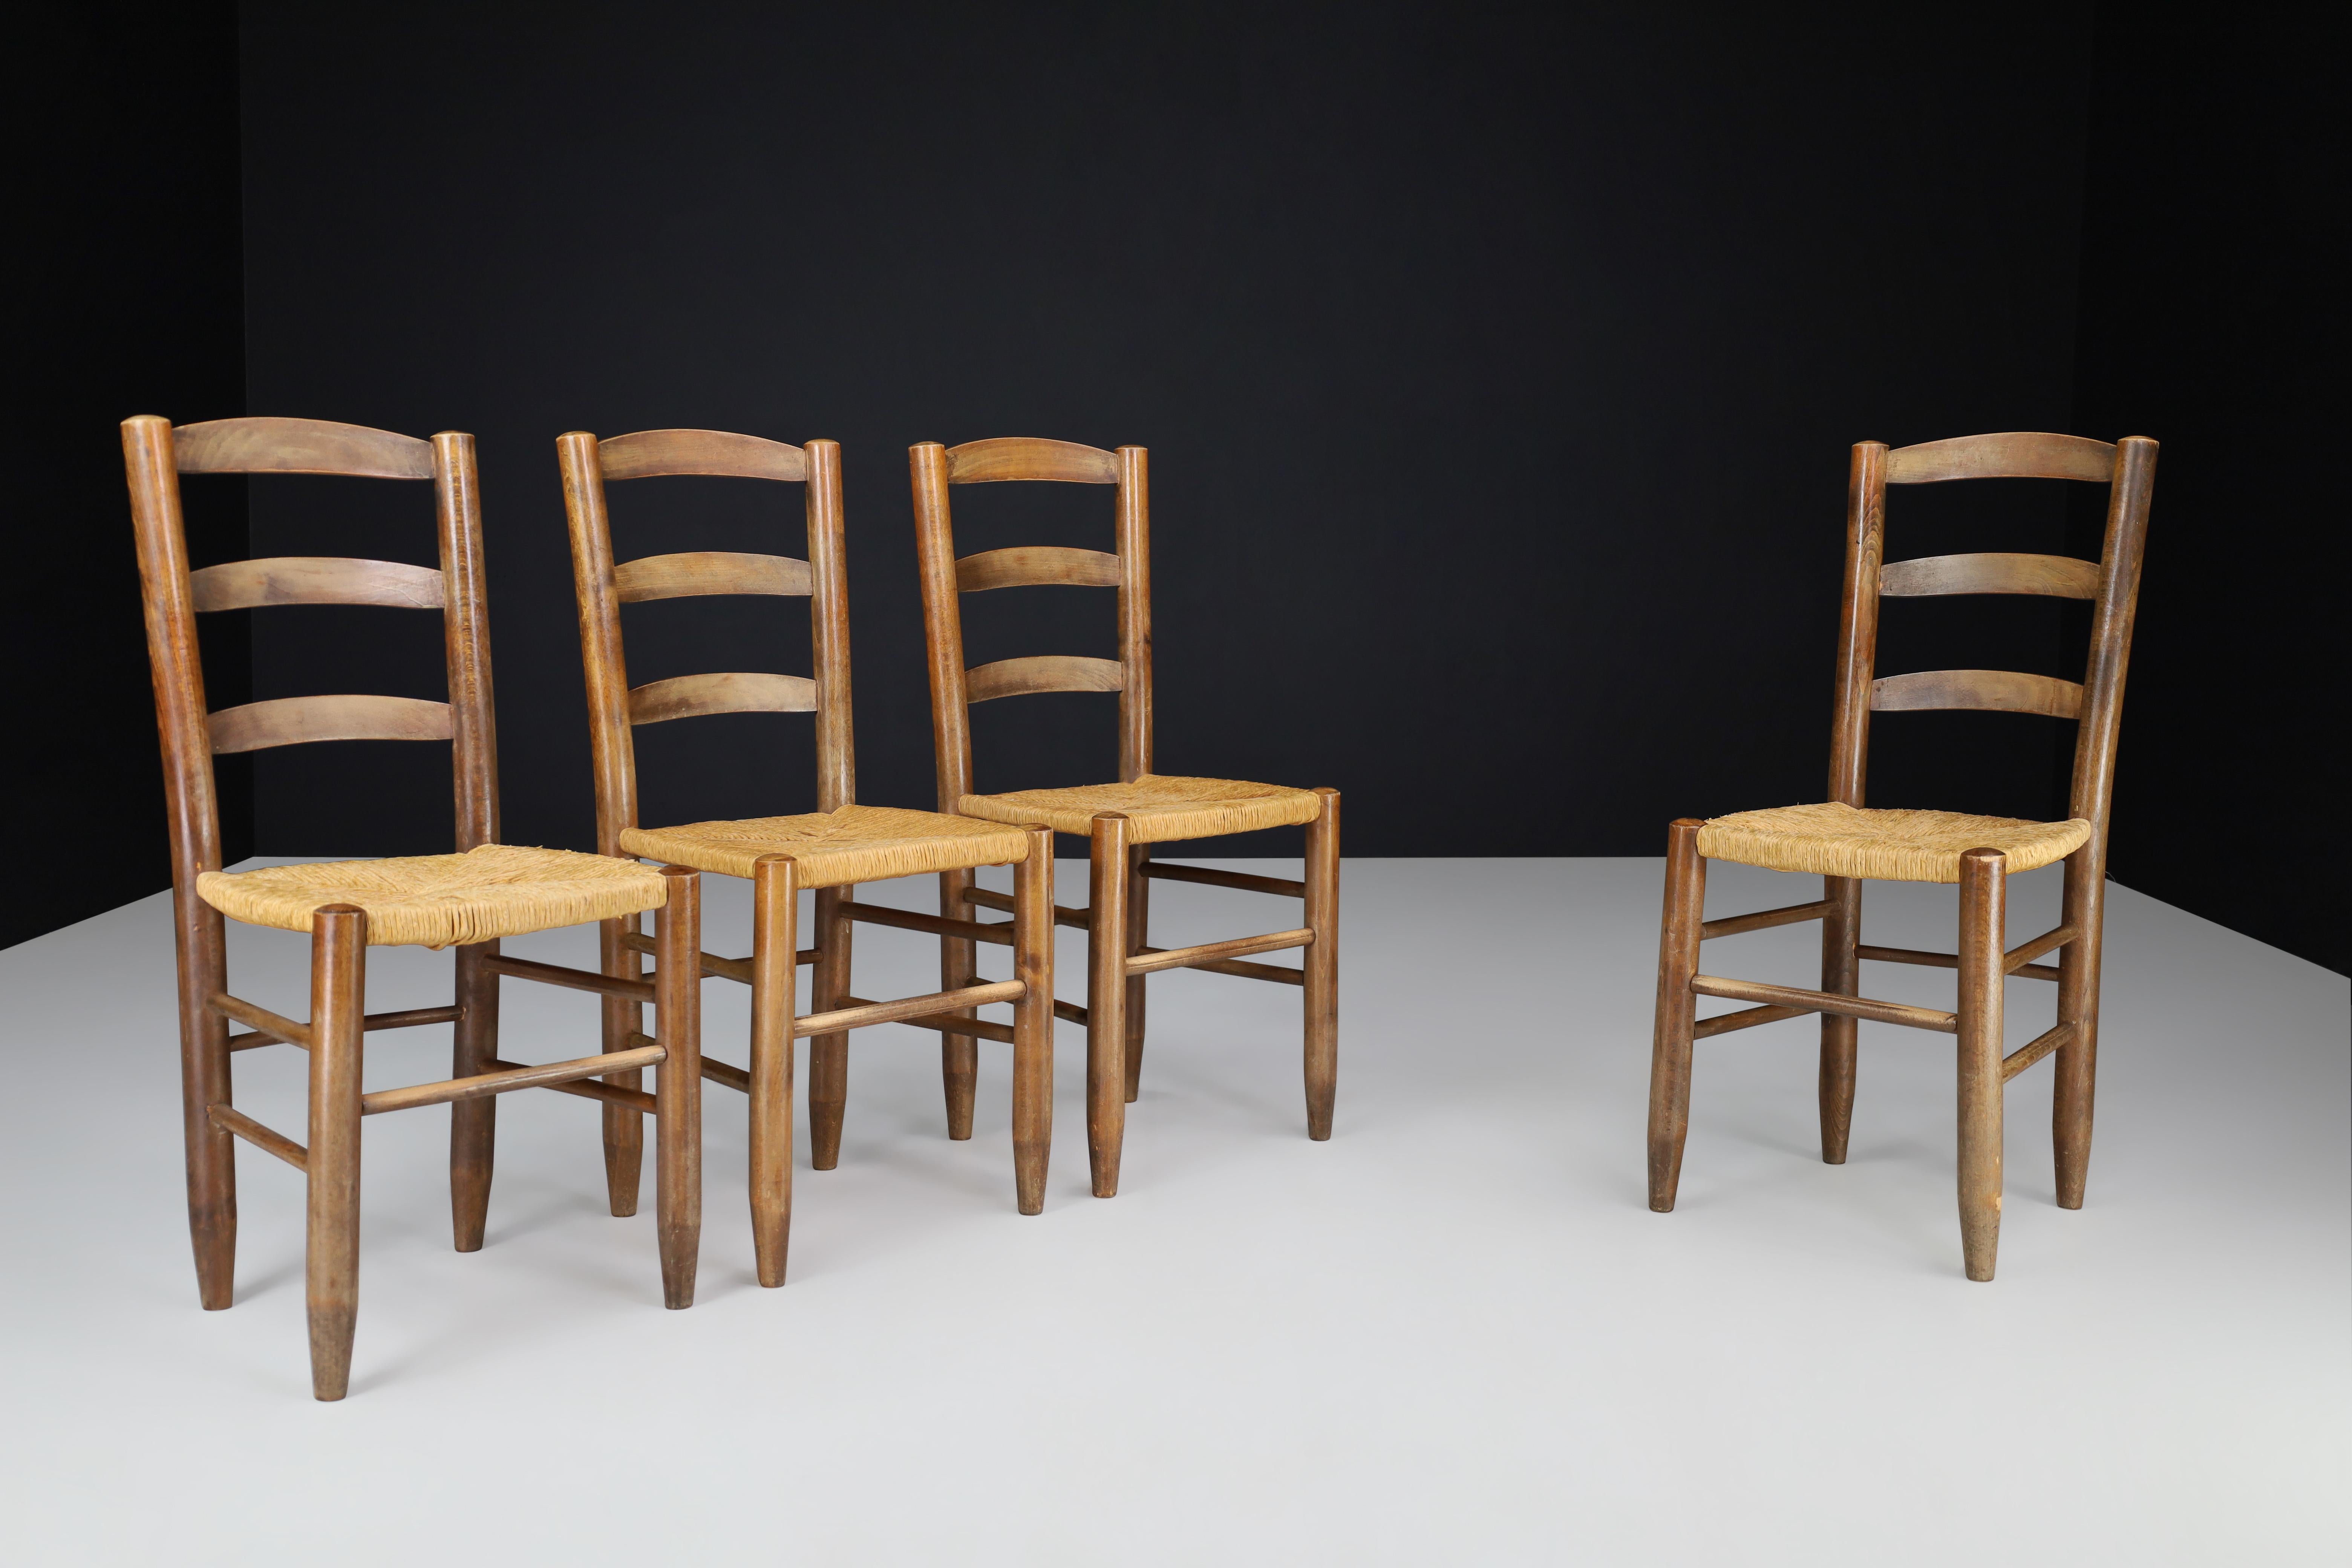 Chaises de salle à manger de style Charlotte Perriand, France, années 1950.

Ces chaises de salle à manger dans le style de Charlotte Perriand ont été fabriquées en France dans les années 1950. Elles sont fabriquées en hêtre massif et en jonc et